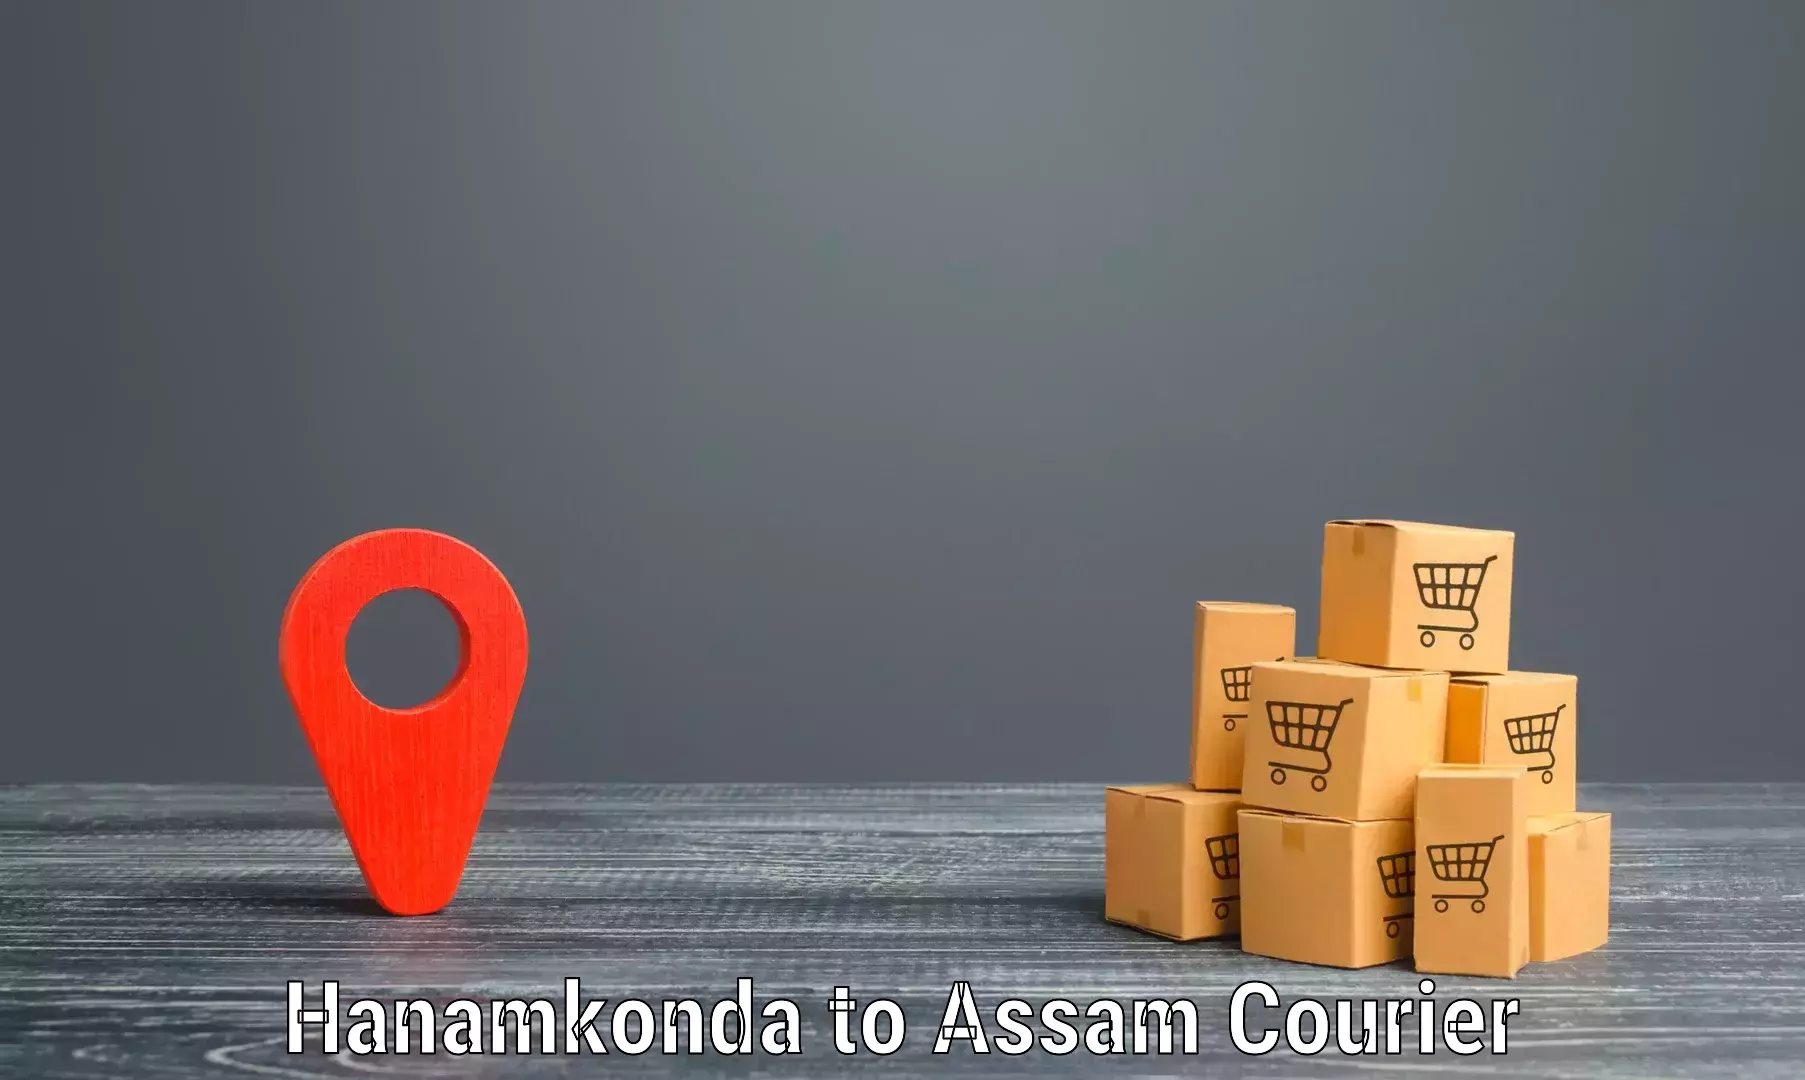 Courier service comparison Hanamkonda to Banderdewa